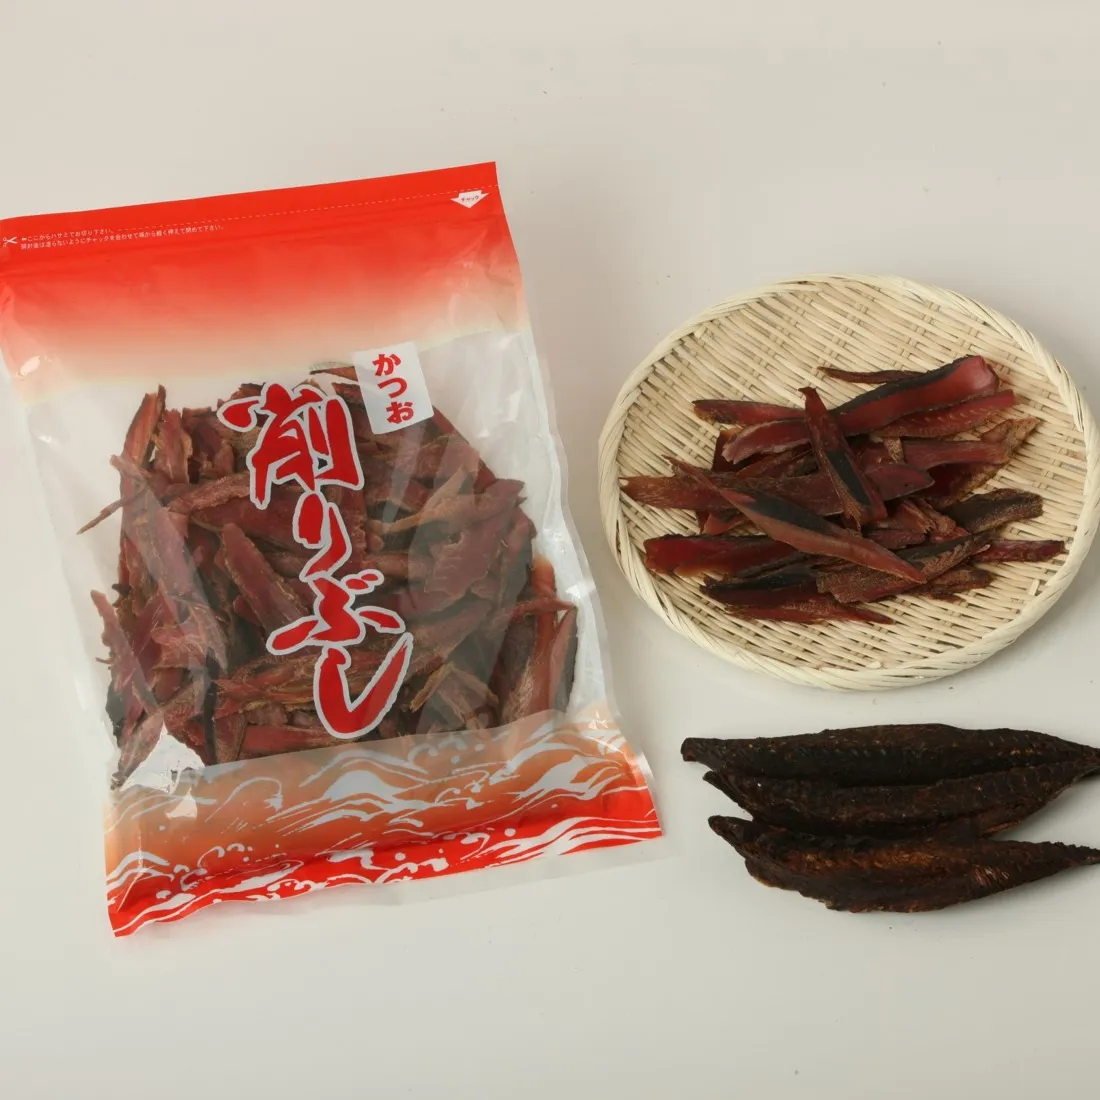 ペットフードOK日本の良質輸入乾燥カツオは日本のスープや添加物を含まず、